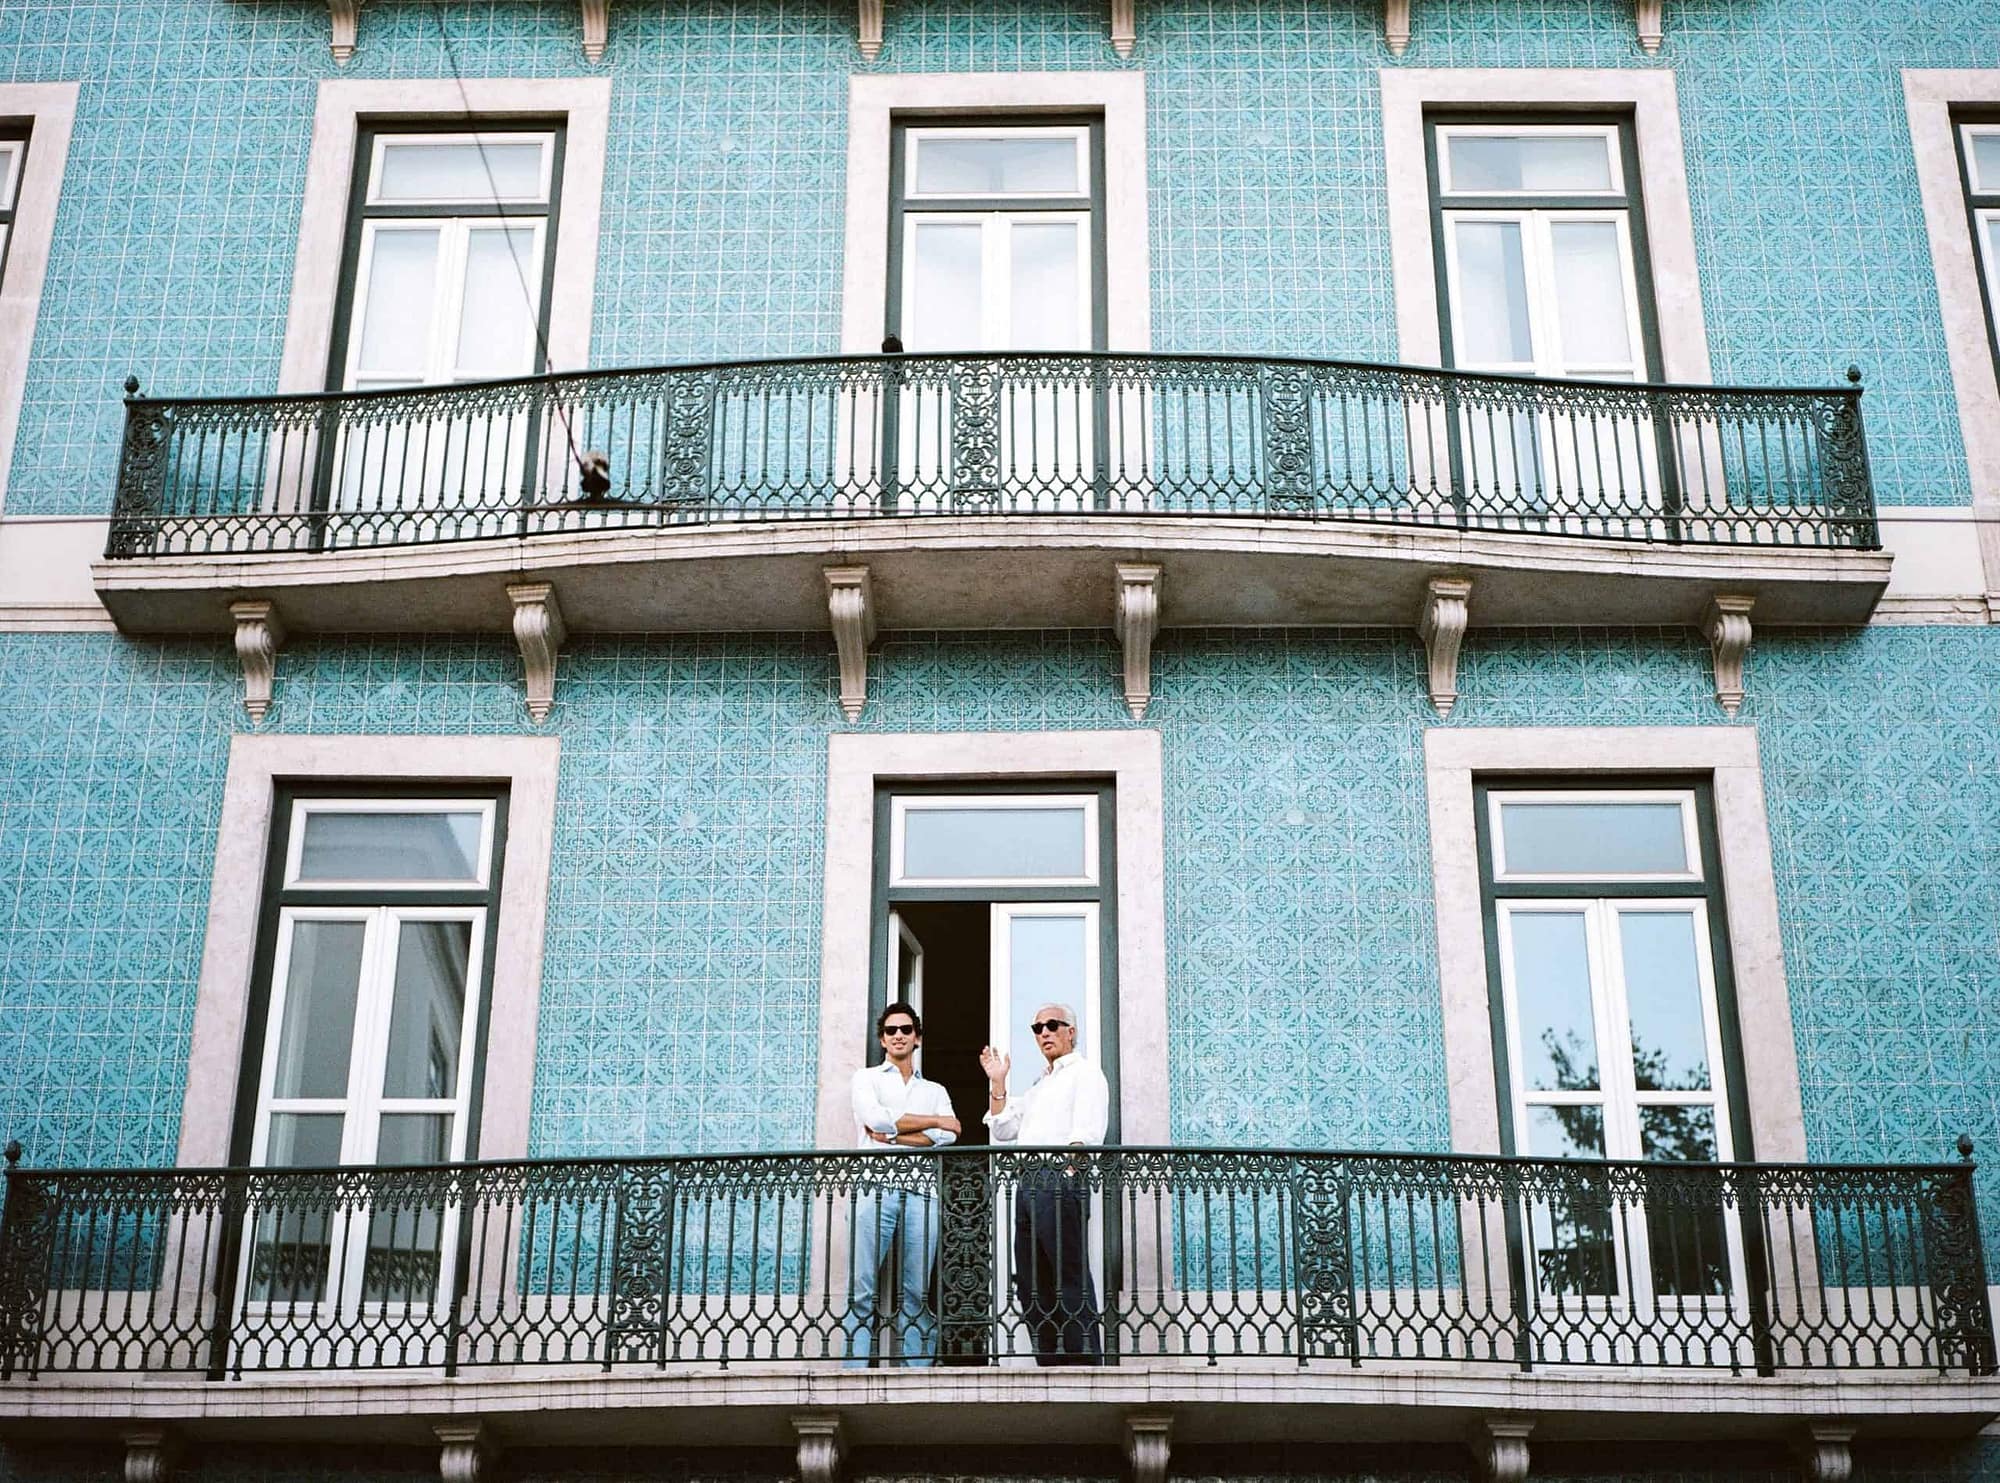 Investisseurs dans une maison typique de Lisbonne couverte d'azulejos. Les opportunités d'investissement sont nombreuses à Lisbonne